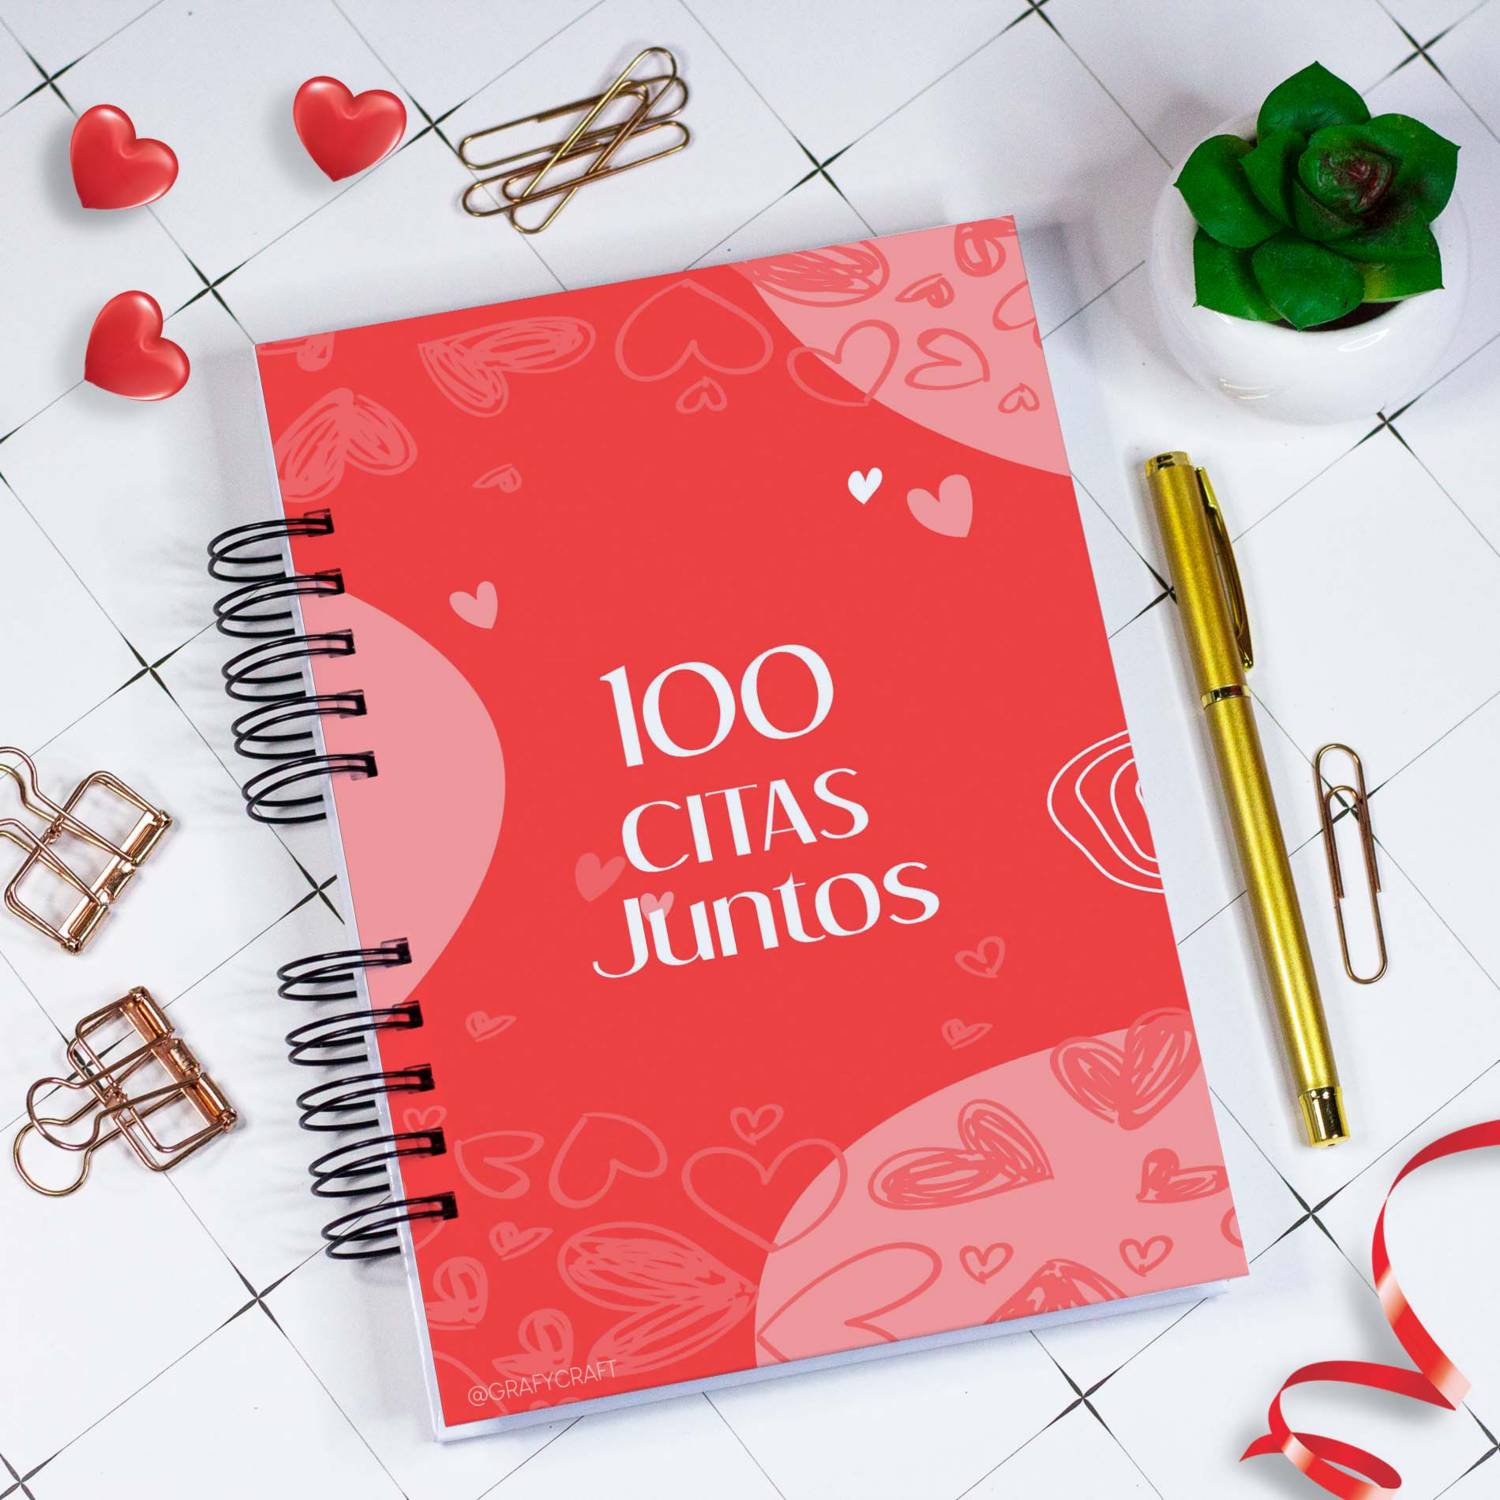 ✨NUEVO PRODUCTO: LIBRO 100 CITAS✨ Este nuevo producto se trata de un libro  con 100 citas para que cumplas junto a tu pareja!✨🙌🏼 Está…